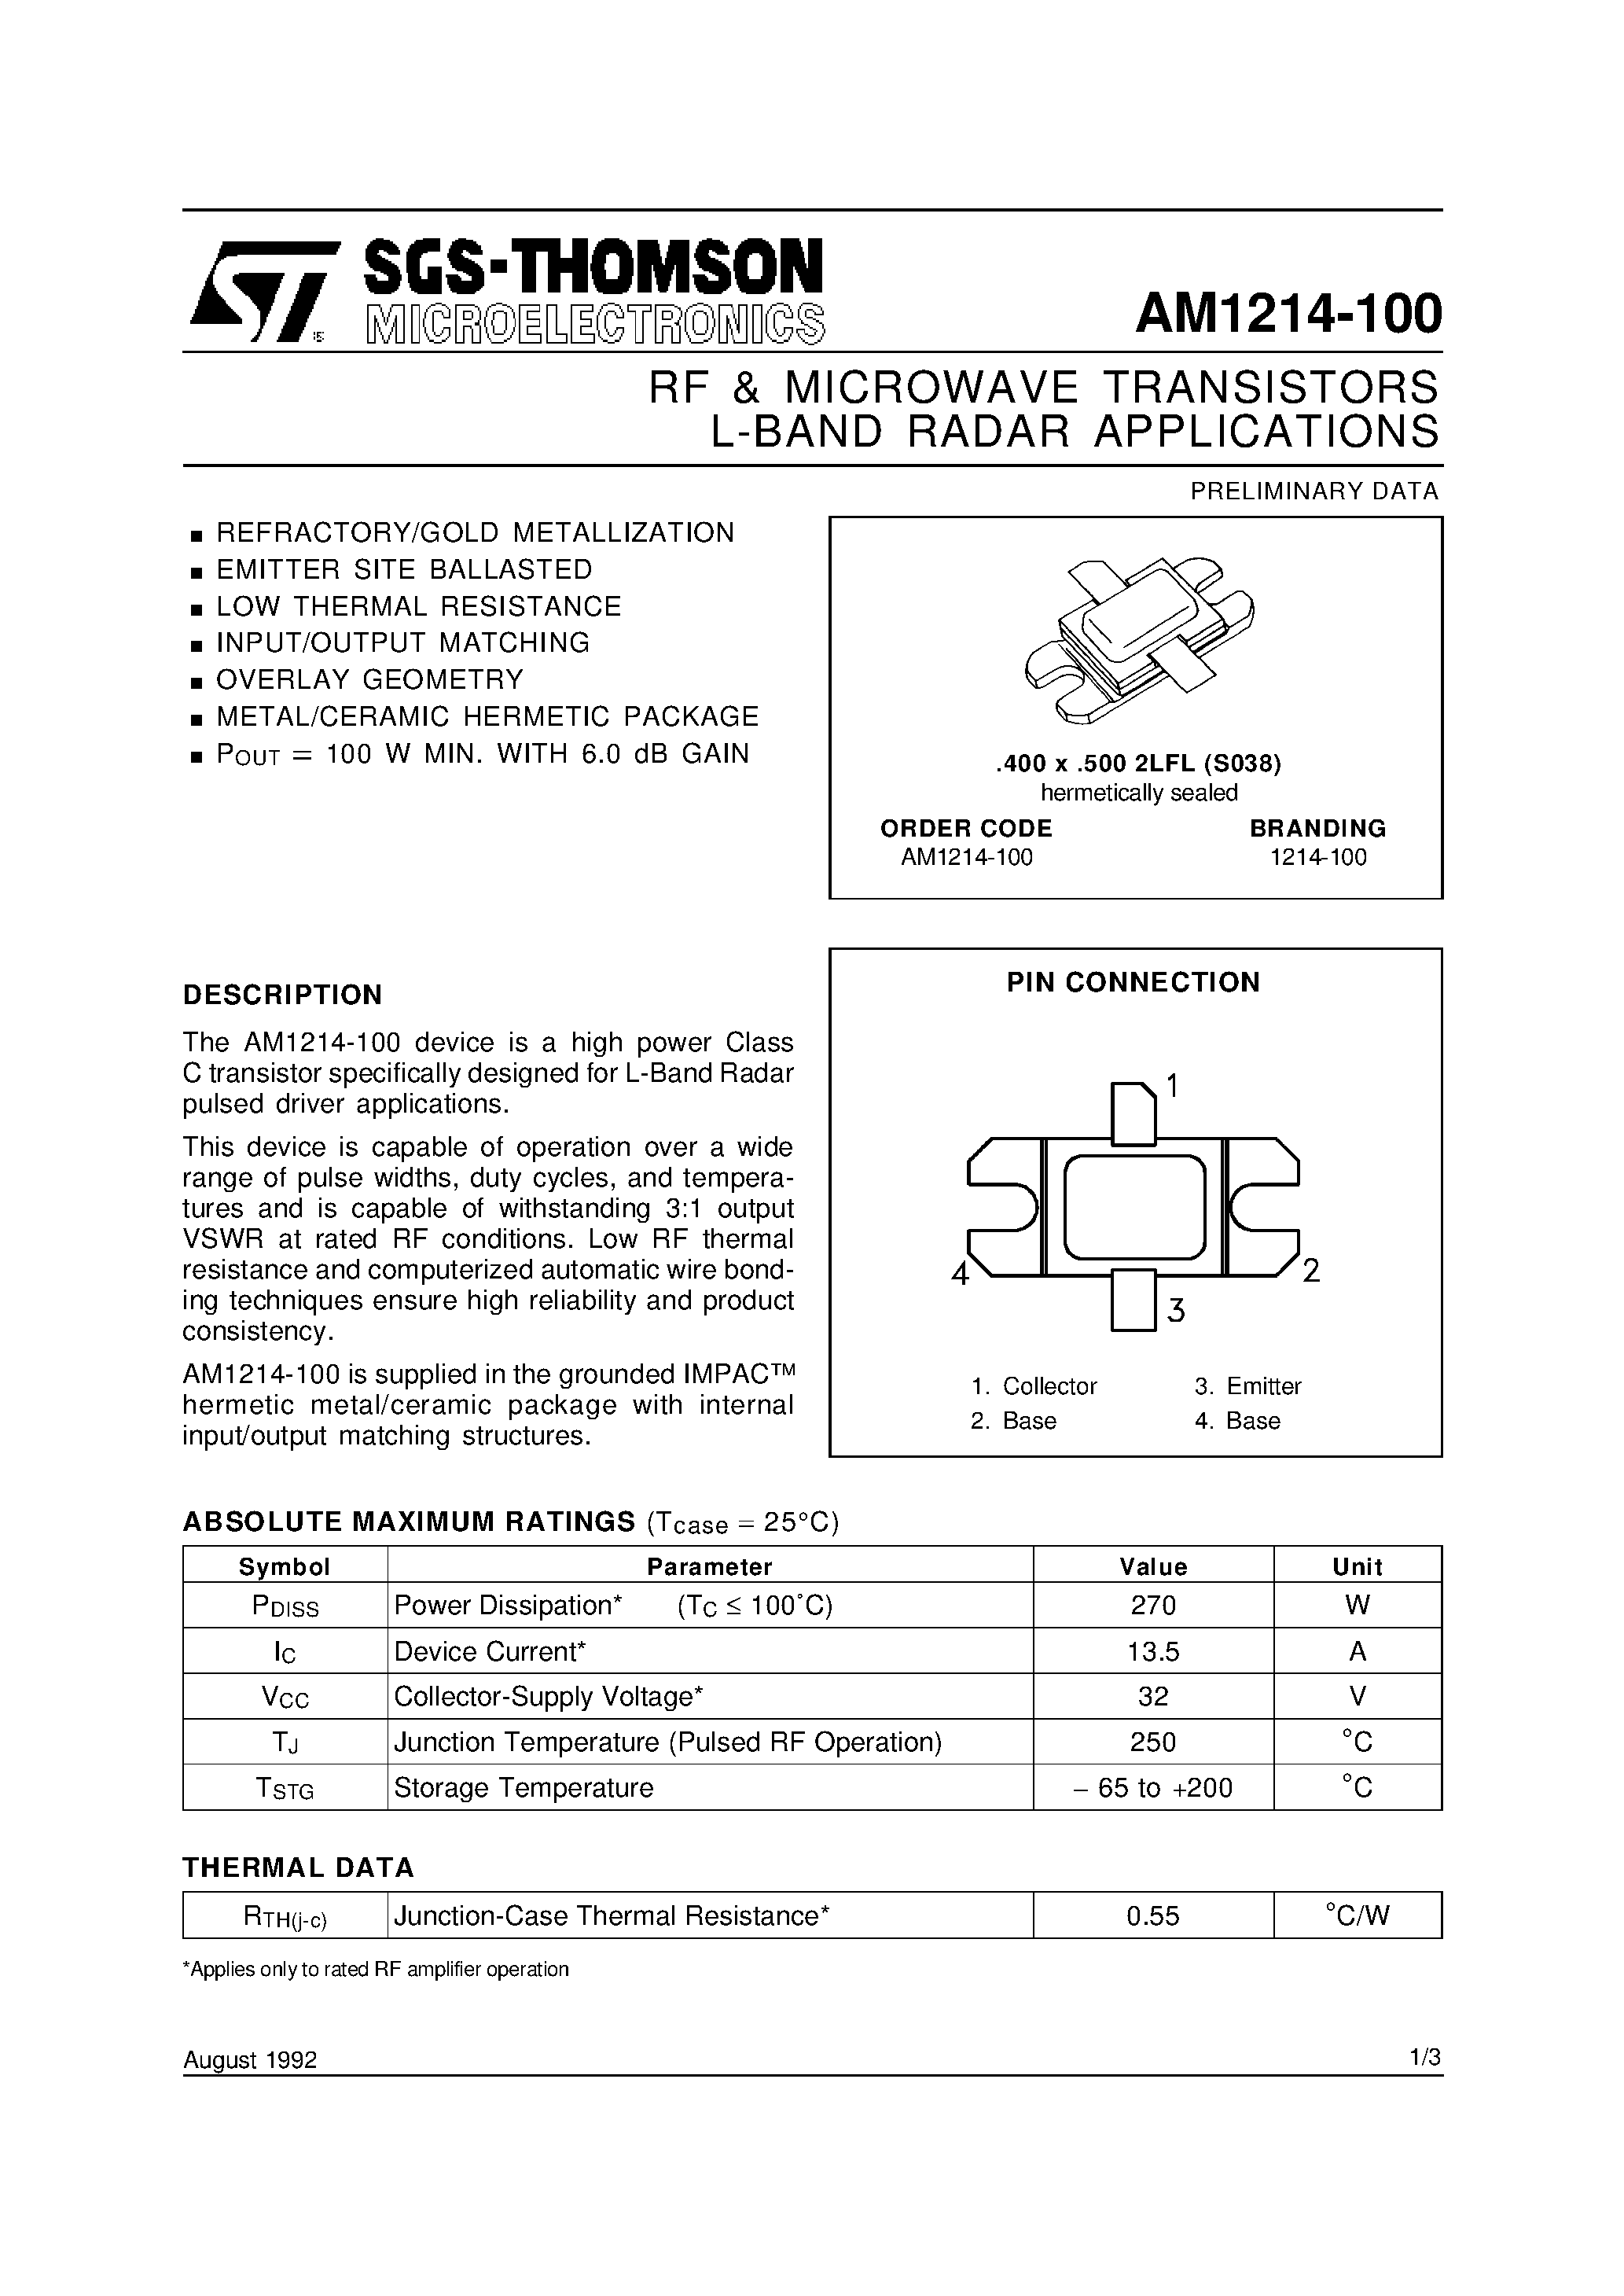 Даташит AM1214-100 - L-BAND RADAR APPLICATIONS RF & MICROWAVE TRANSISTORS страница 1